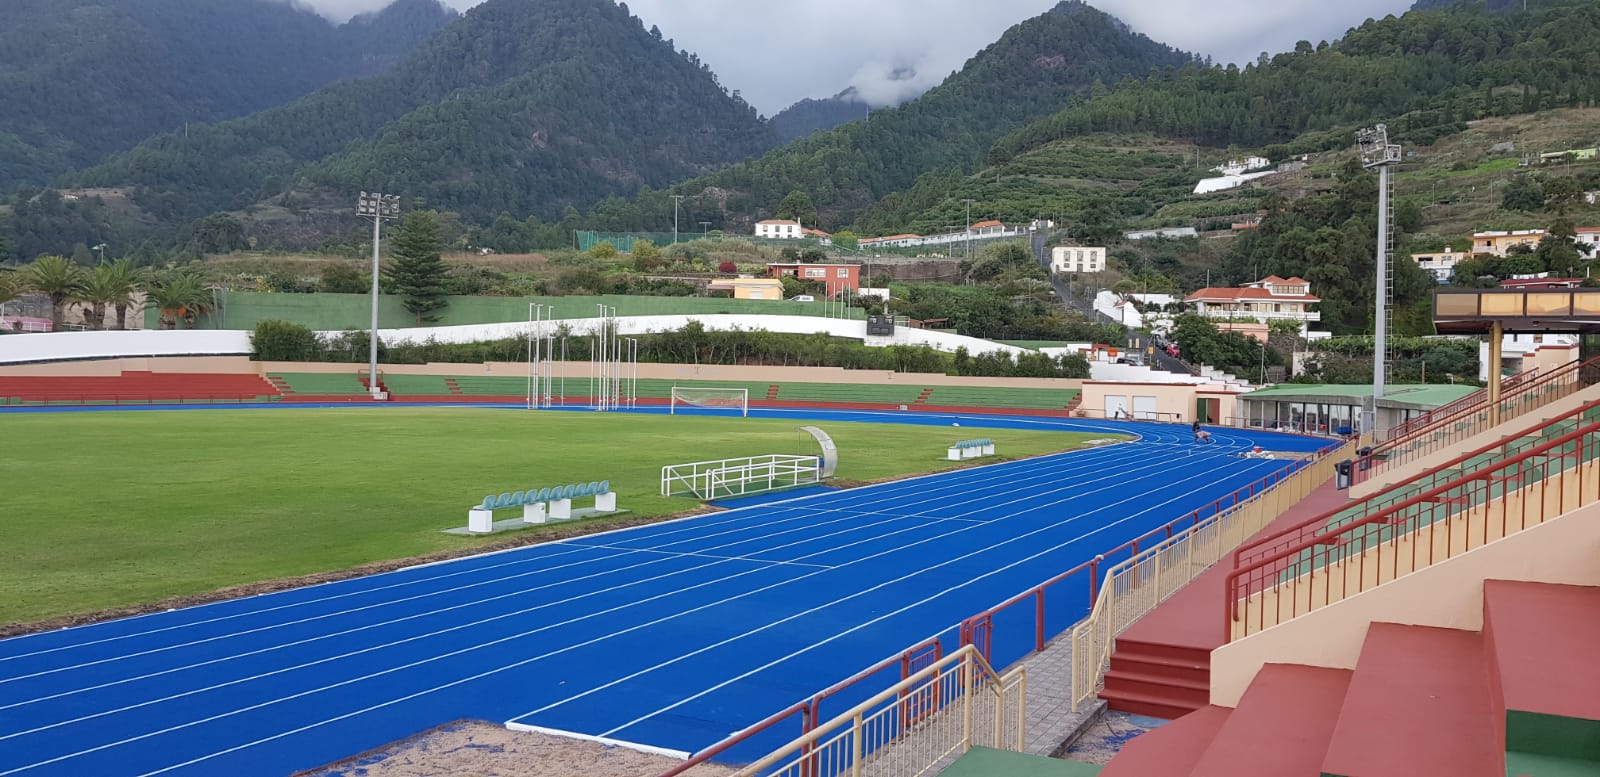 Pista de Atletismo de la Ciudad Deportiva de Miraflores Retopping Azul 2